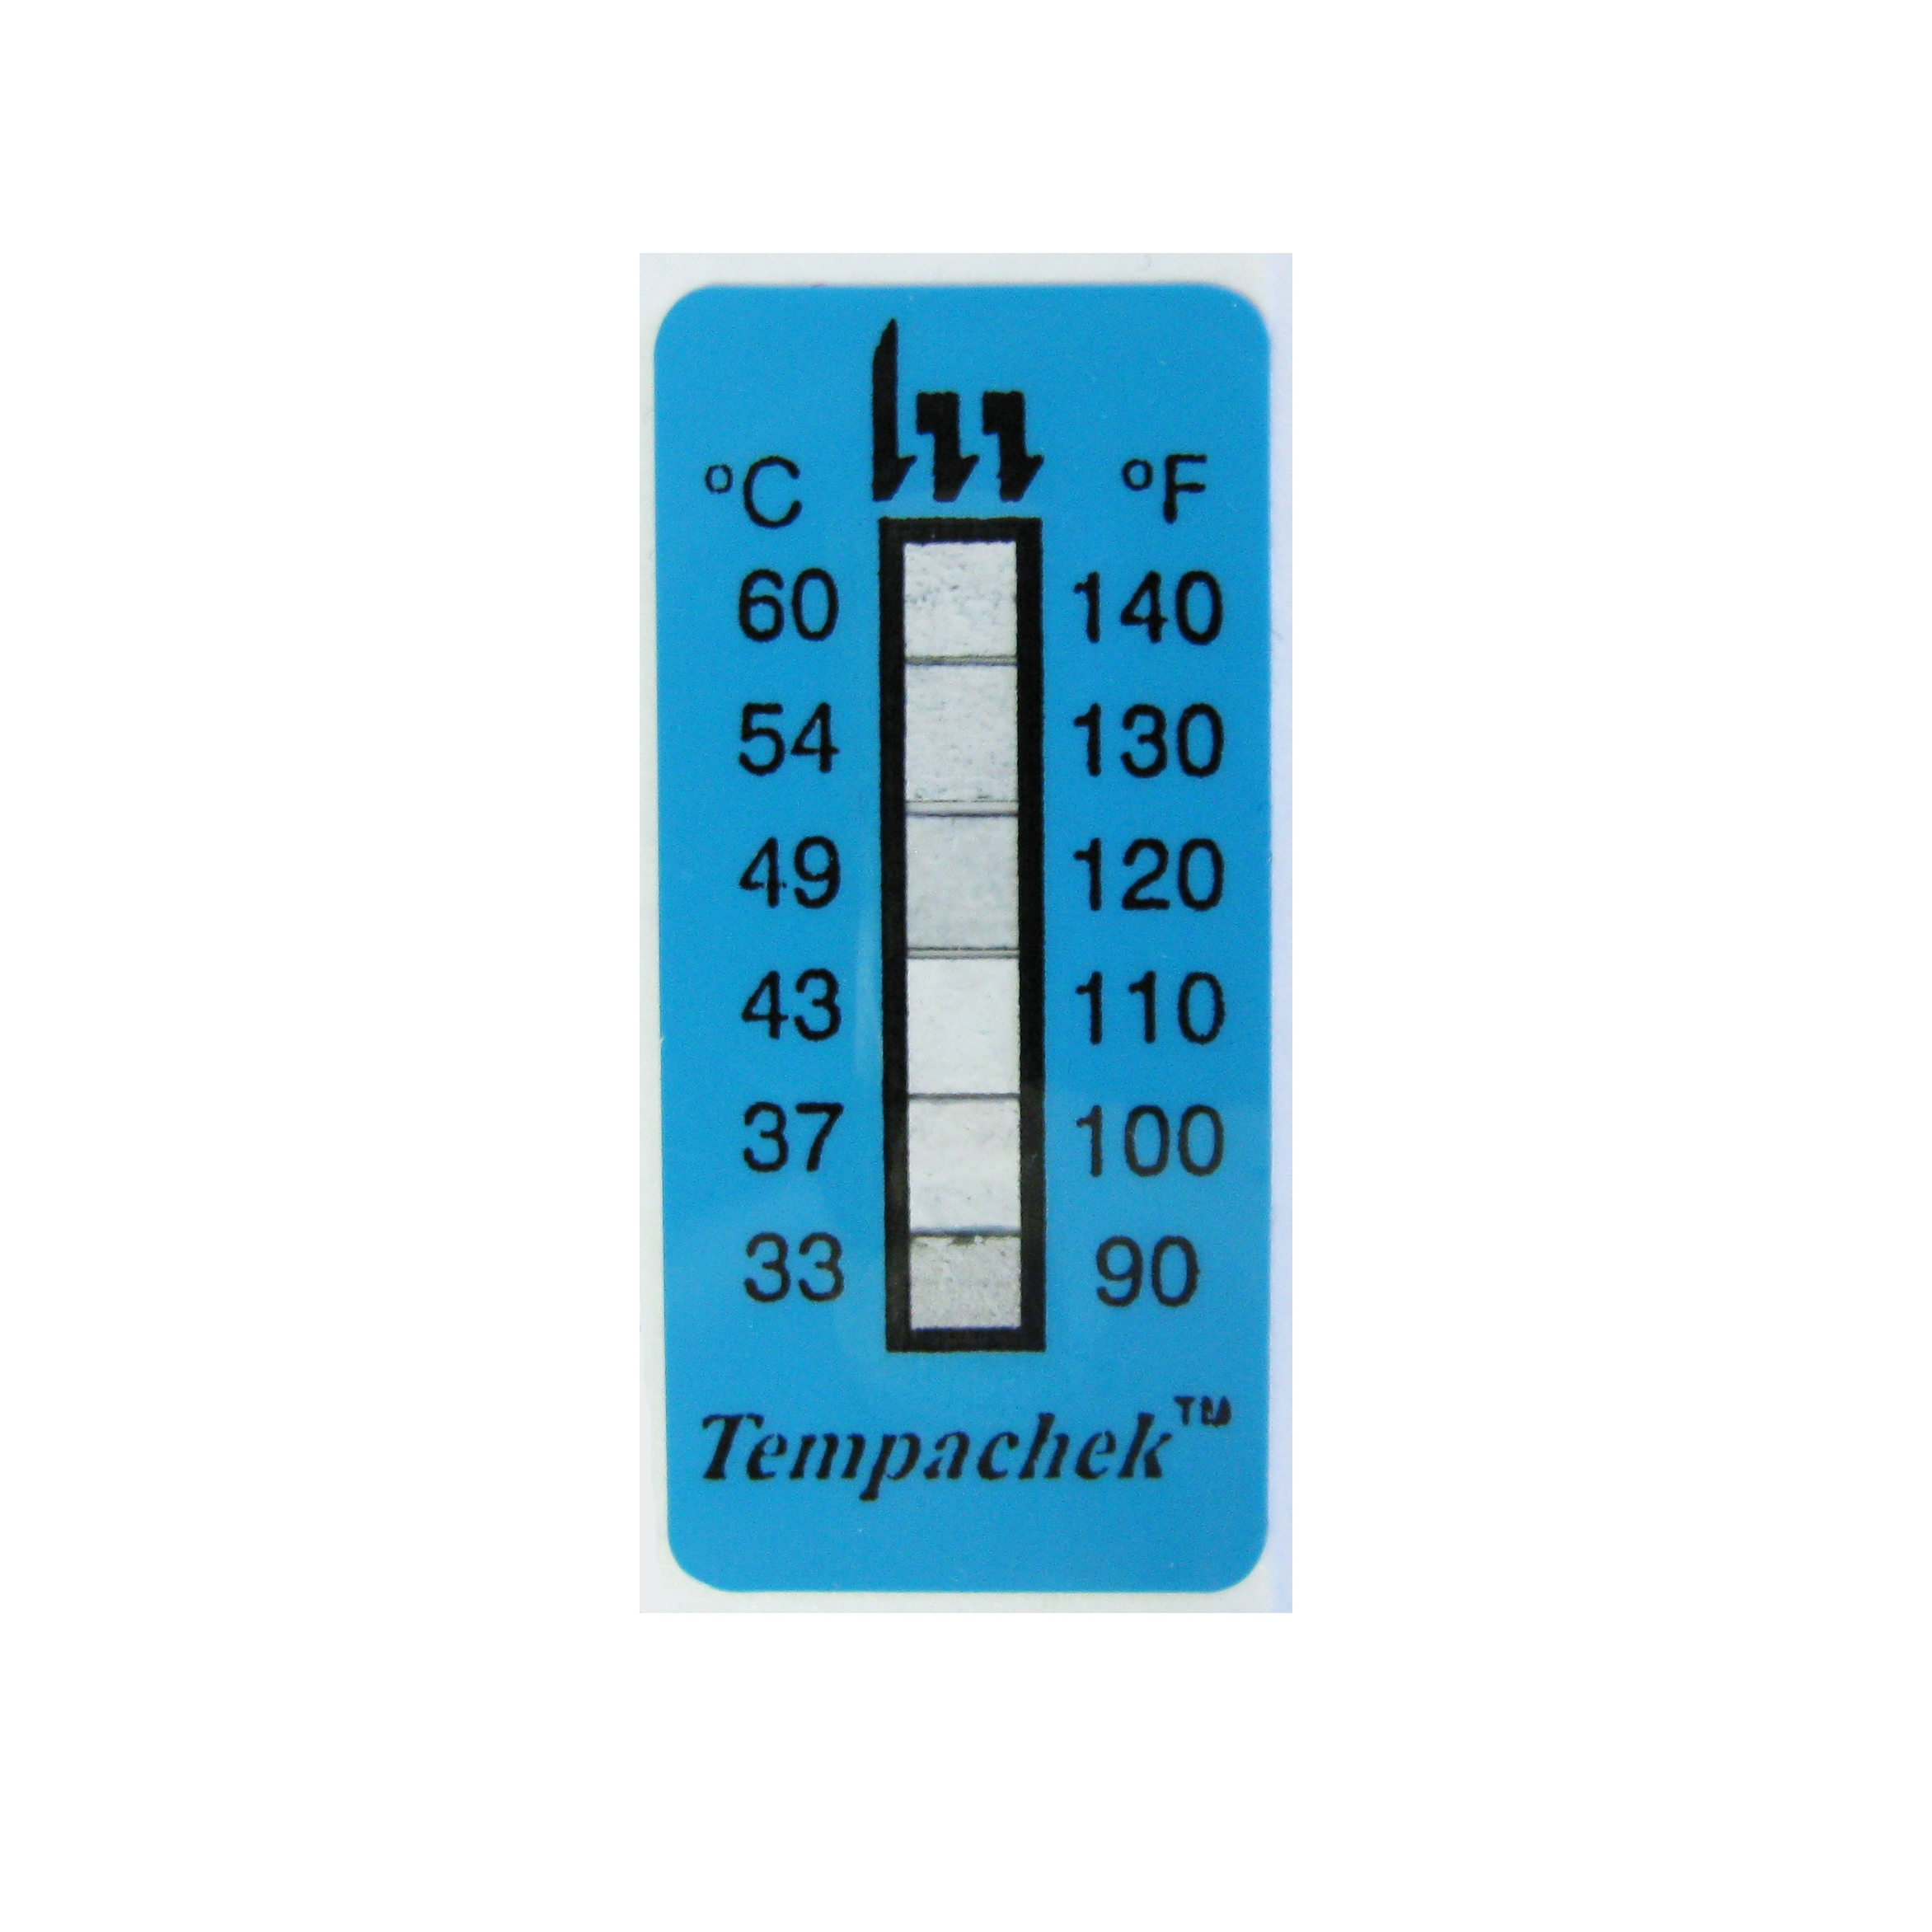 Water Temperature Gauge - CPTR, Temperature Monitor